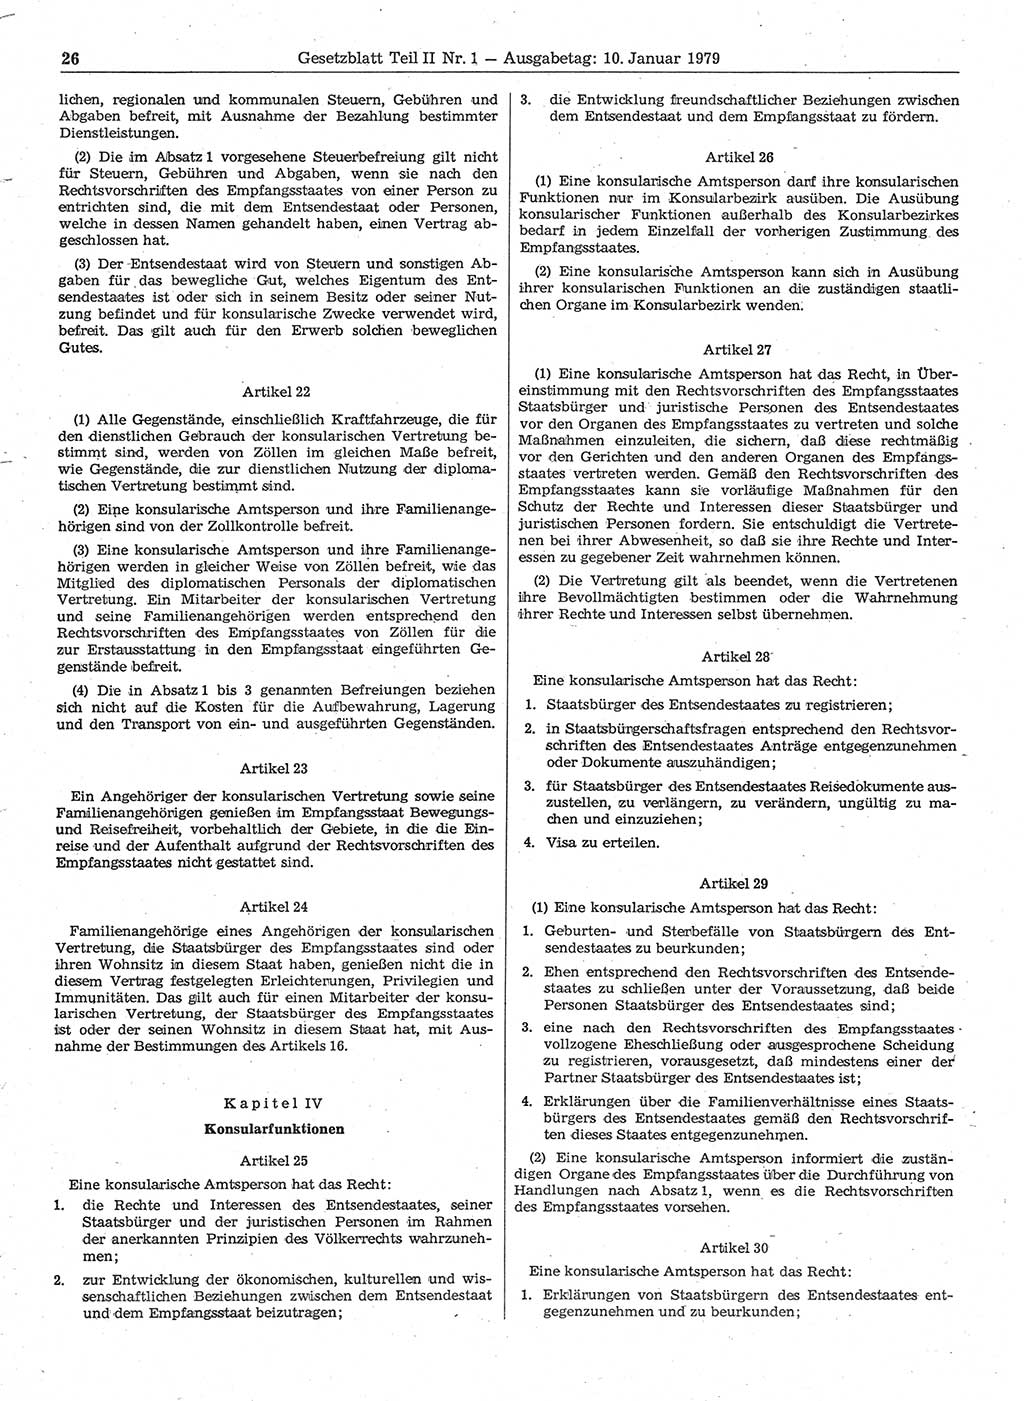 Gesetzblatt (GBl.) der Deutschen Demokratischen Republik (DDR) Teil ⅠⅠ 1979, Seite 26 (GBl. DDR ⅠⅠ 1979, S. 26)